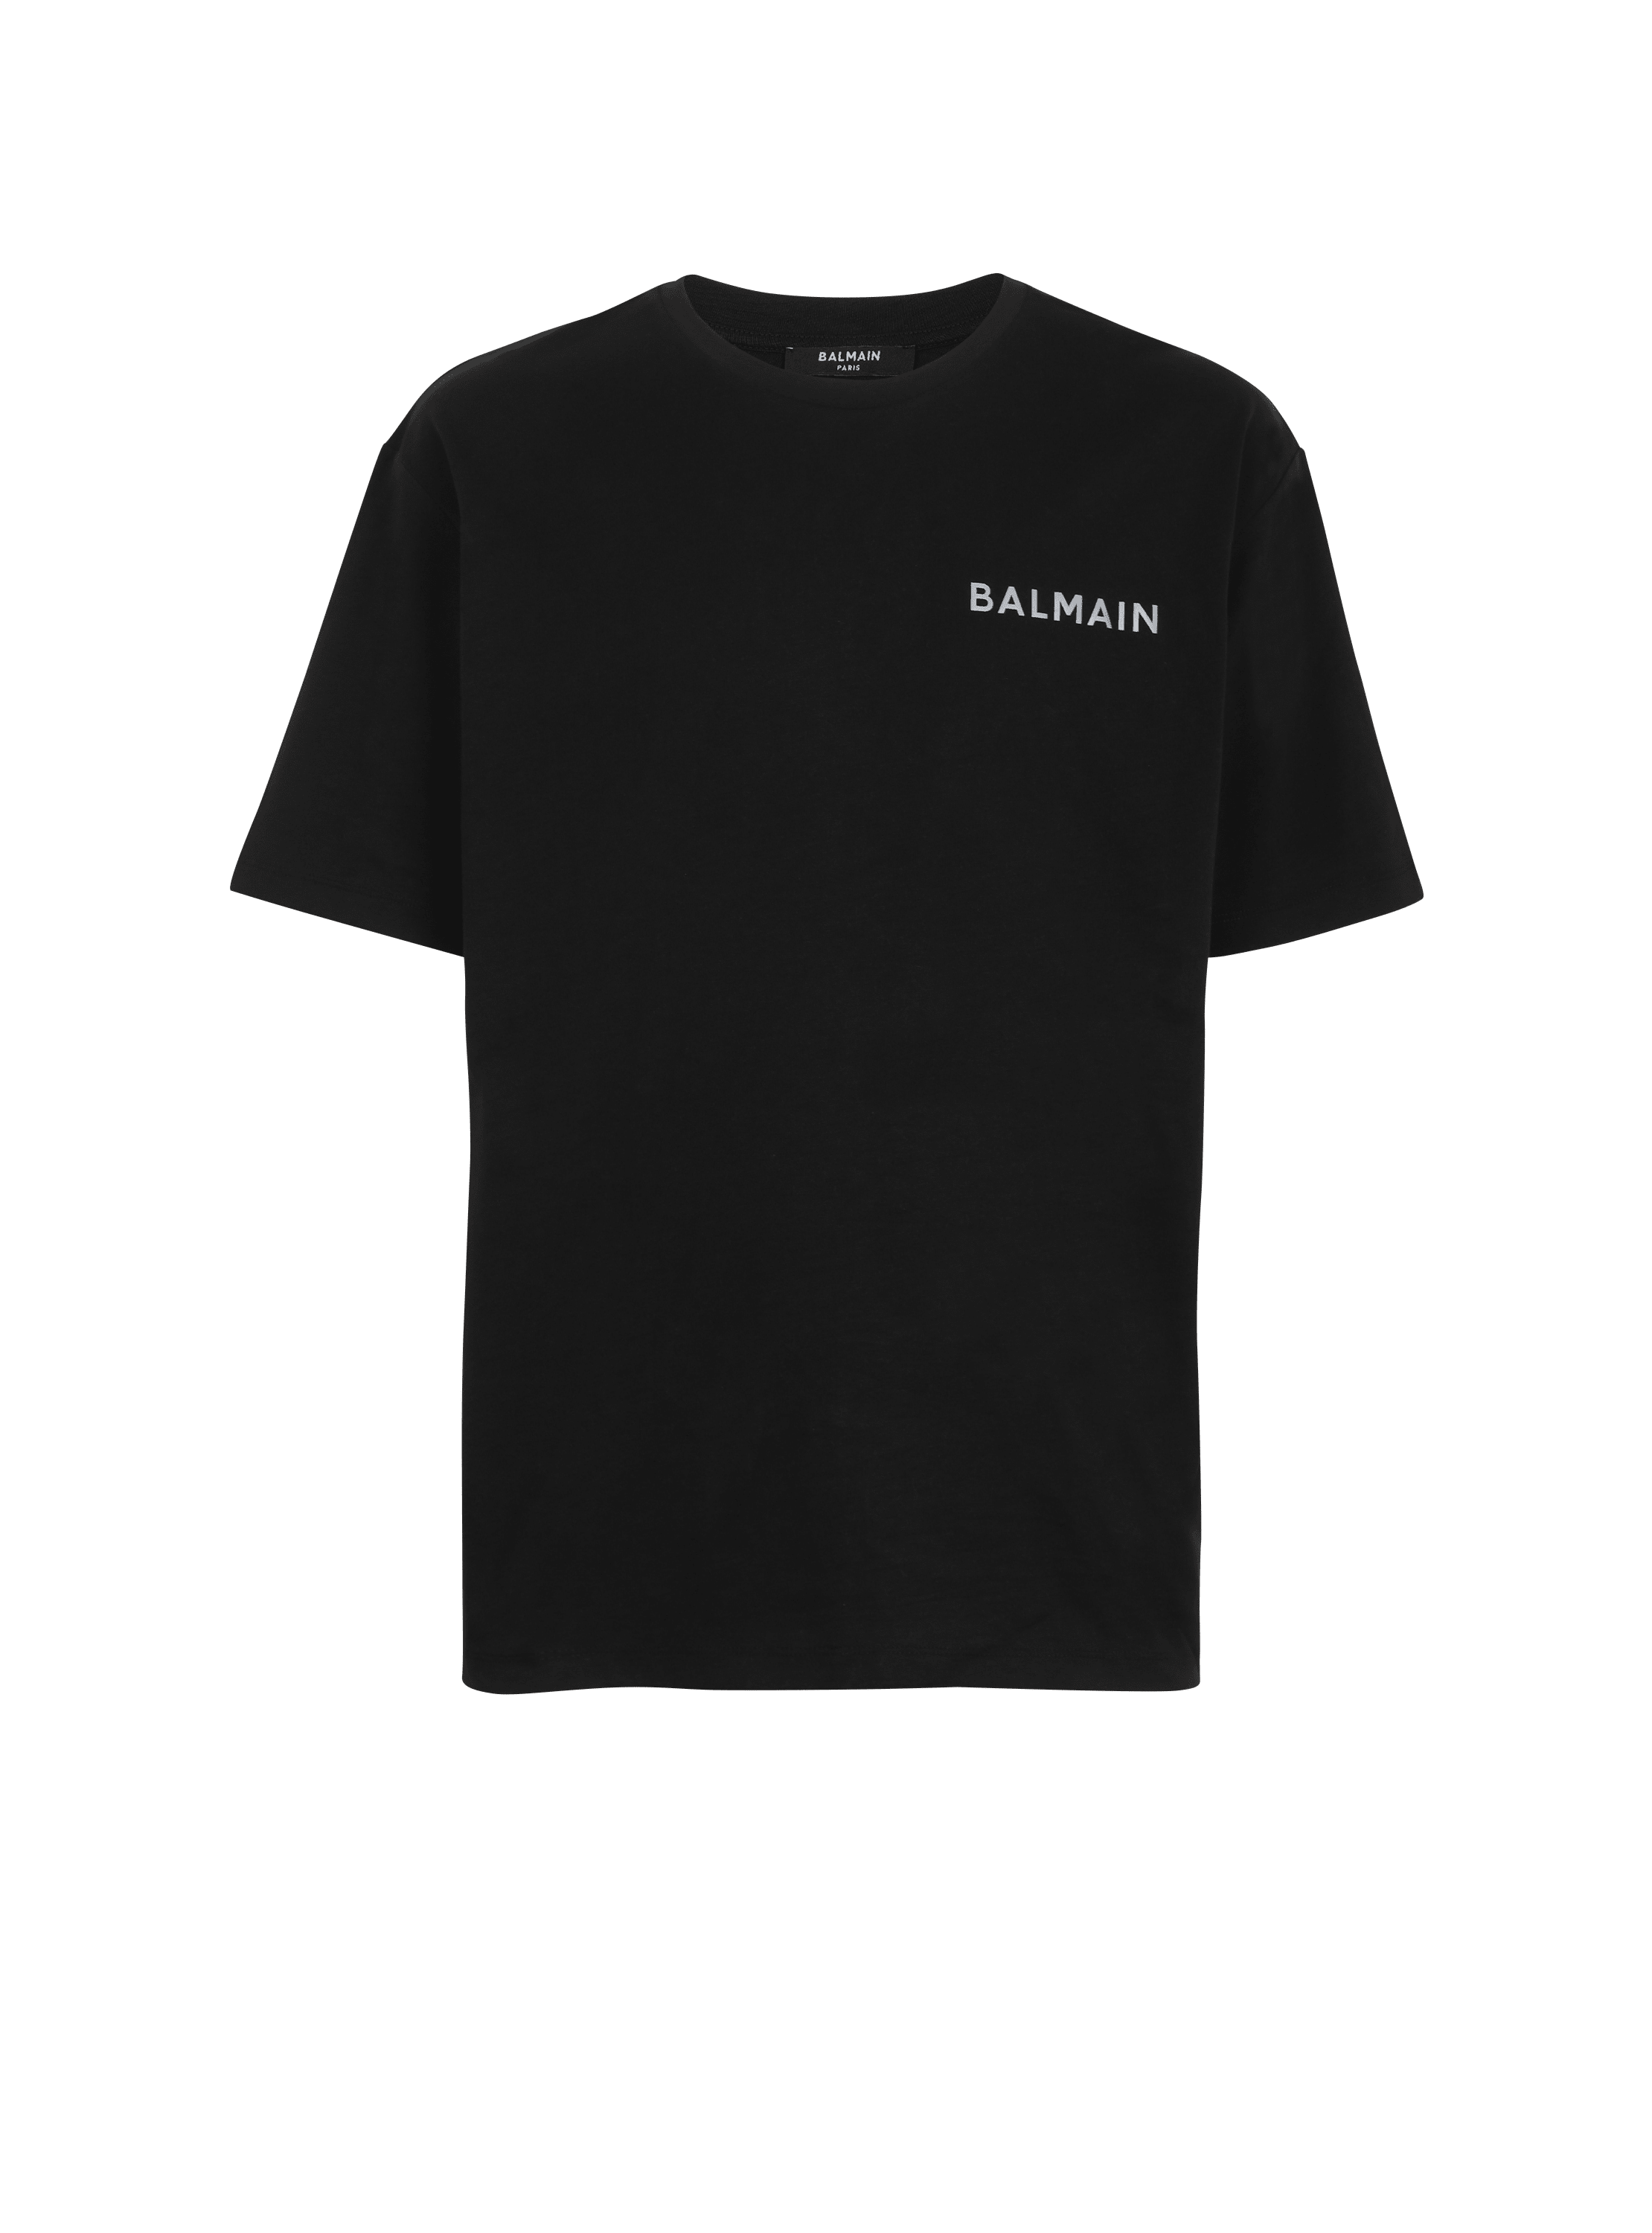 Cotton T-shirt with small Balmain Paris logo, black, hi-res